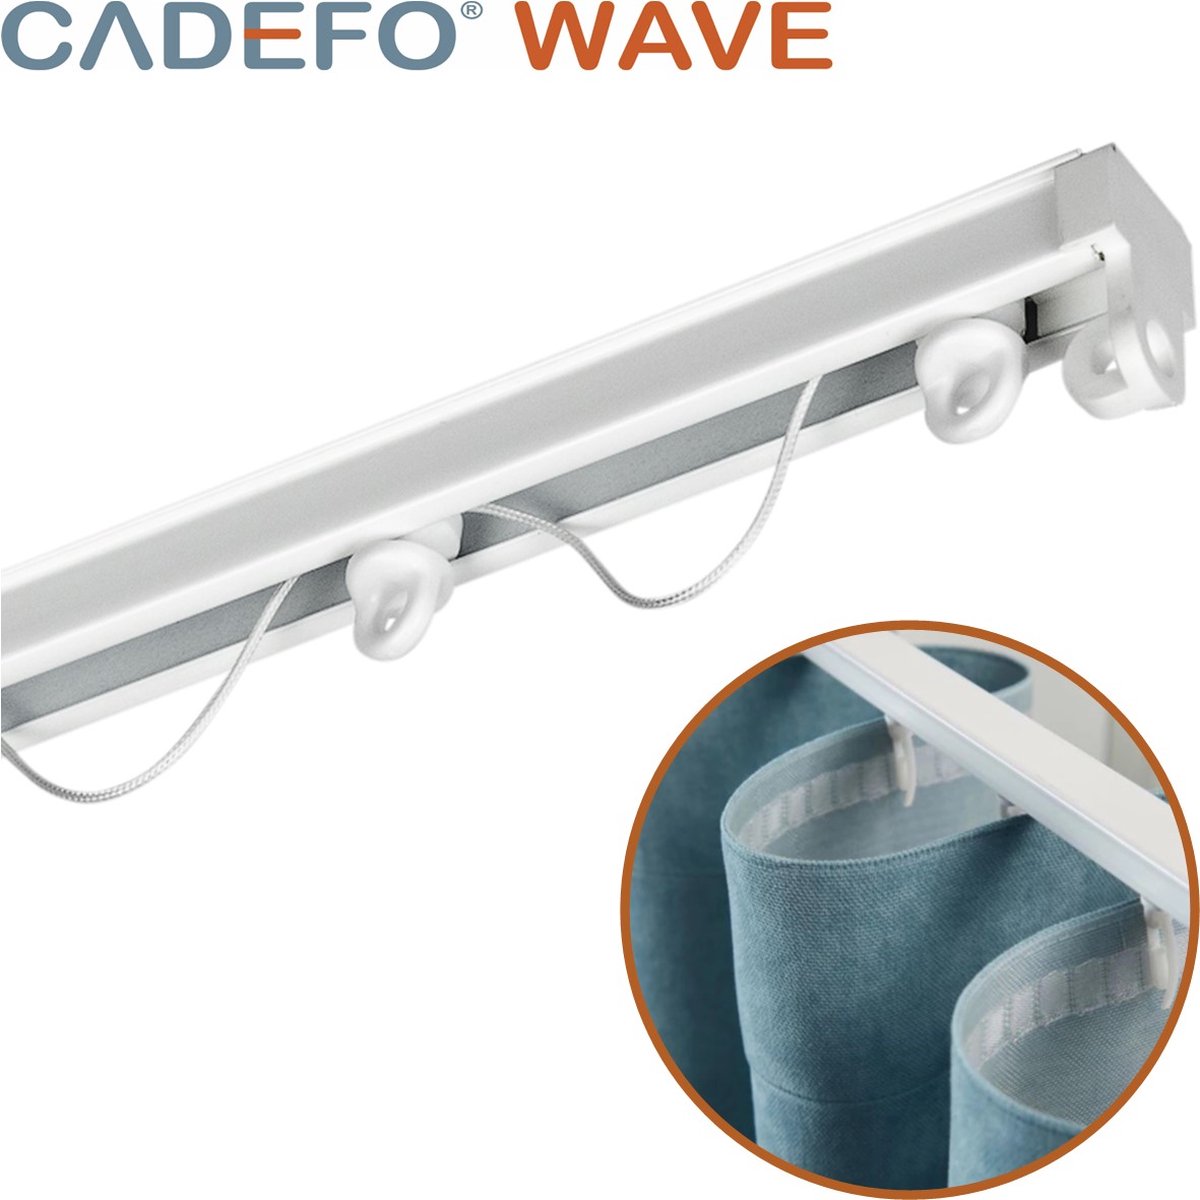 CADEFO WAVE (351 - 400 cm) Gordijnrails - Compleet op maat! - UIT 1 STUK - Leverbaar tot 6 meter - Plafondbevestiging - Lengte 383 cm